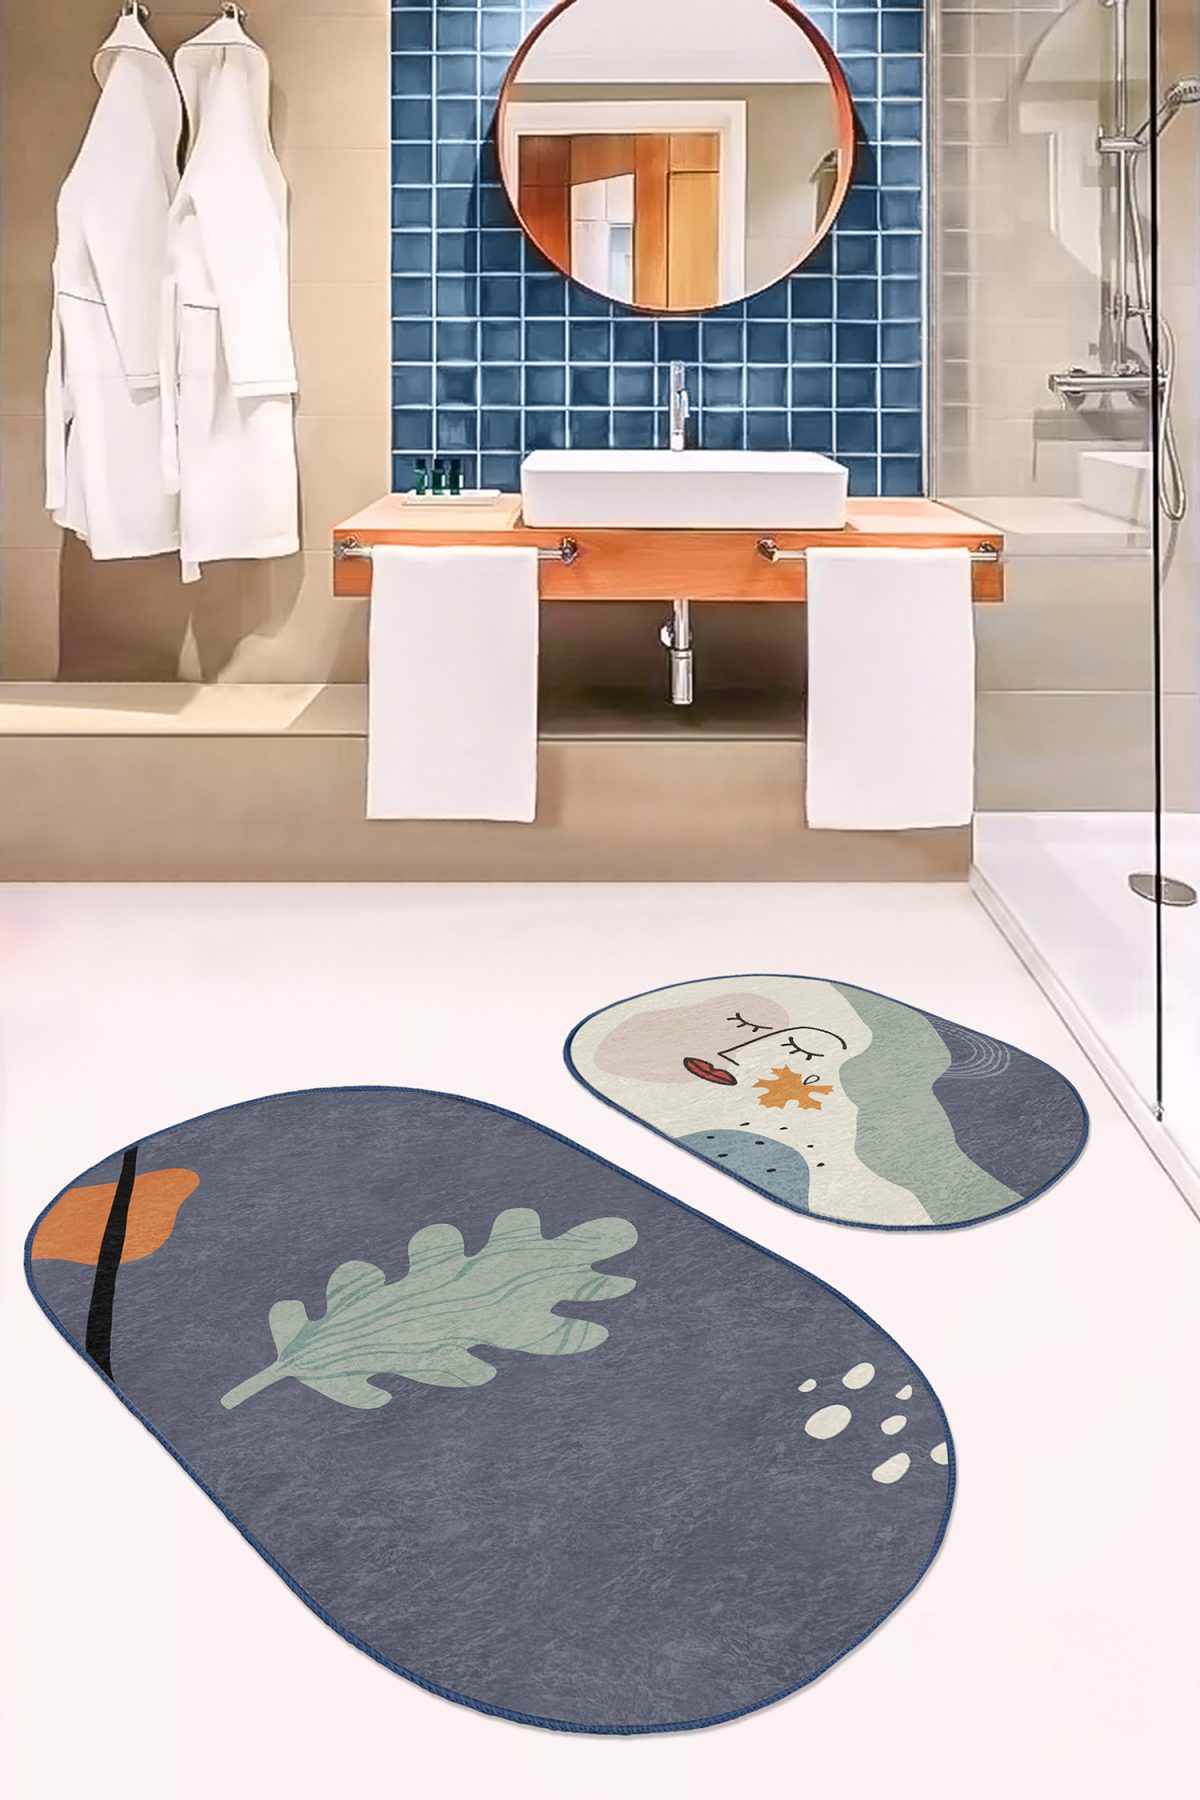 Soyut Tasarımlı Onedraw Motifli Dijital Baskılı 2'li Oval Kaymaz Tabanlı Banyo & Mutfak Paspas Takımı Realhomes